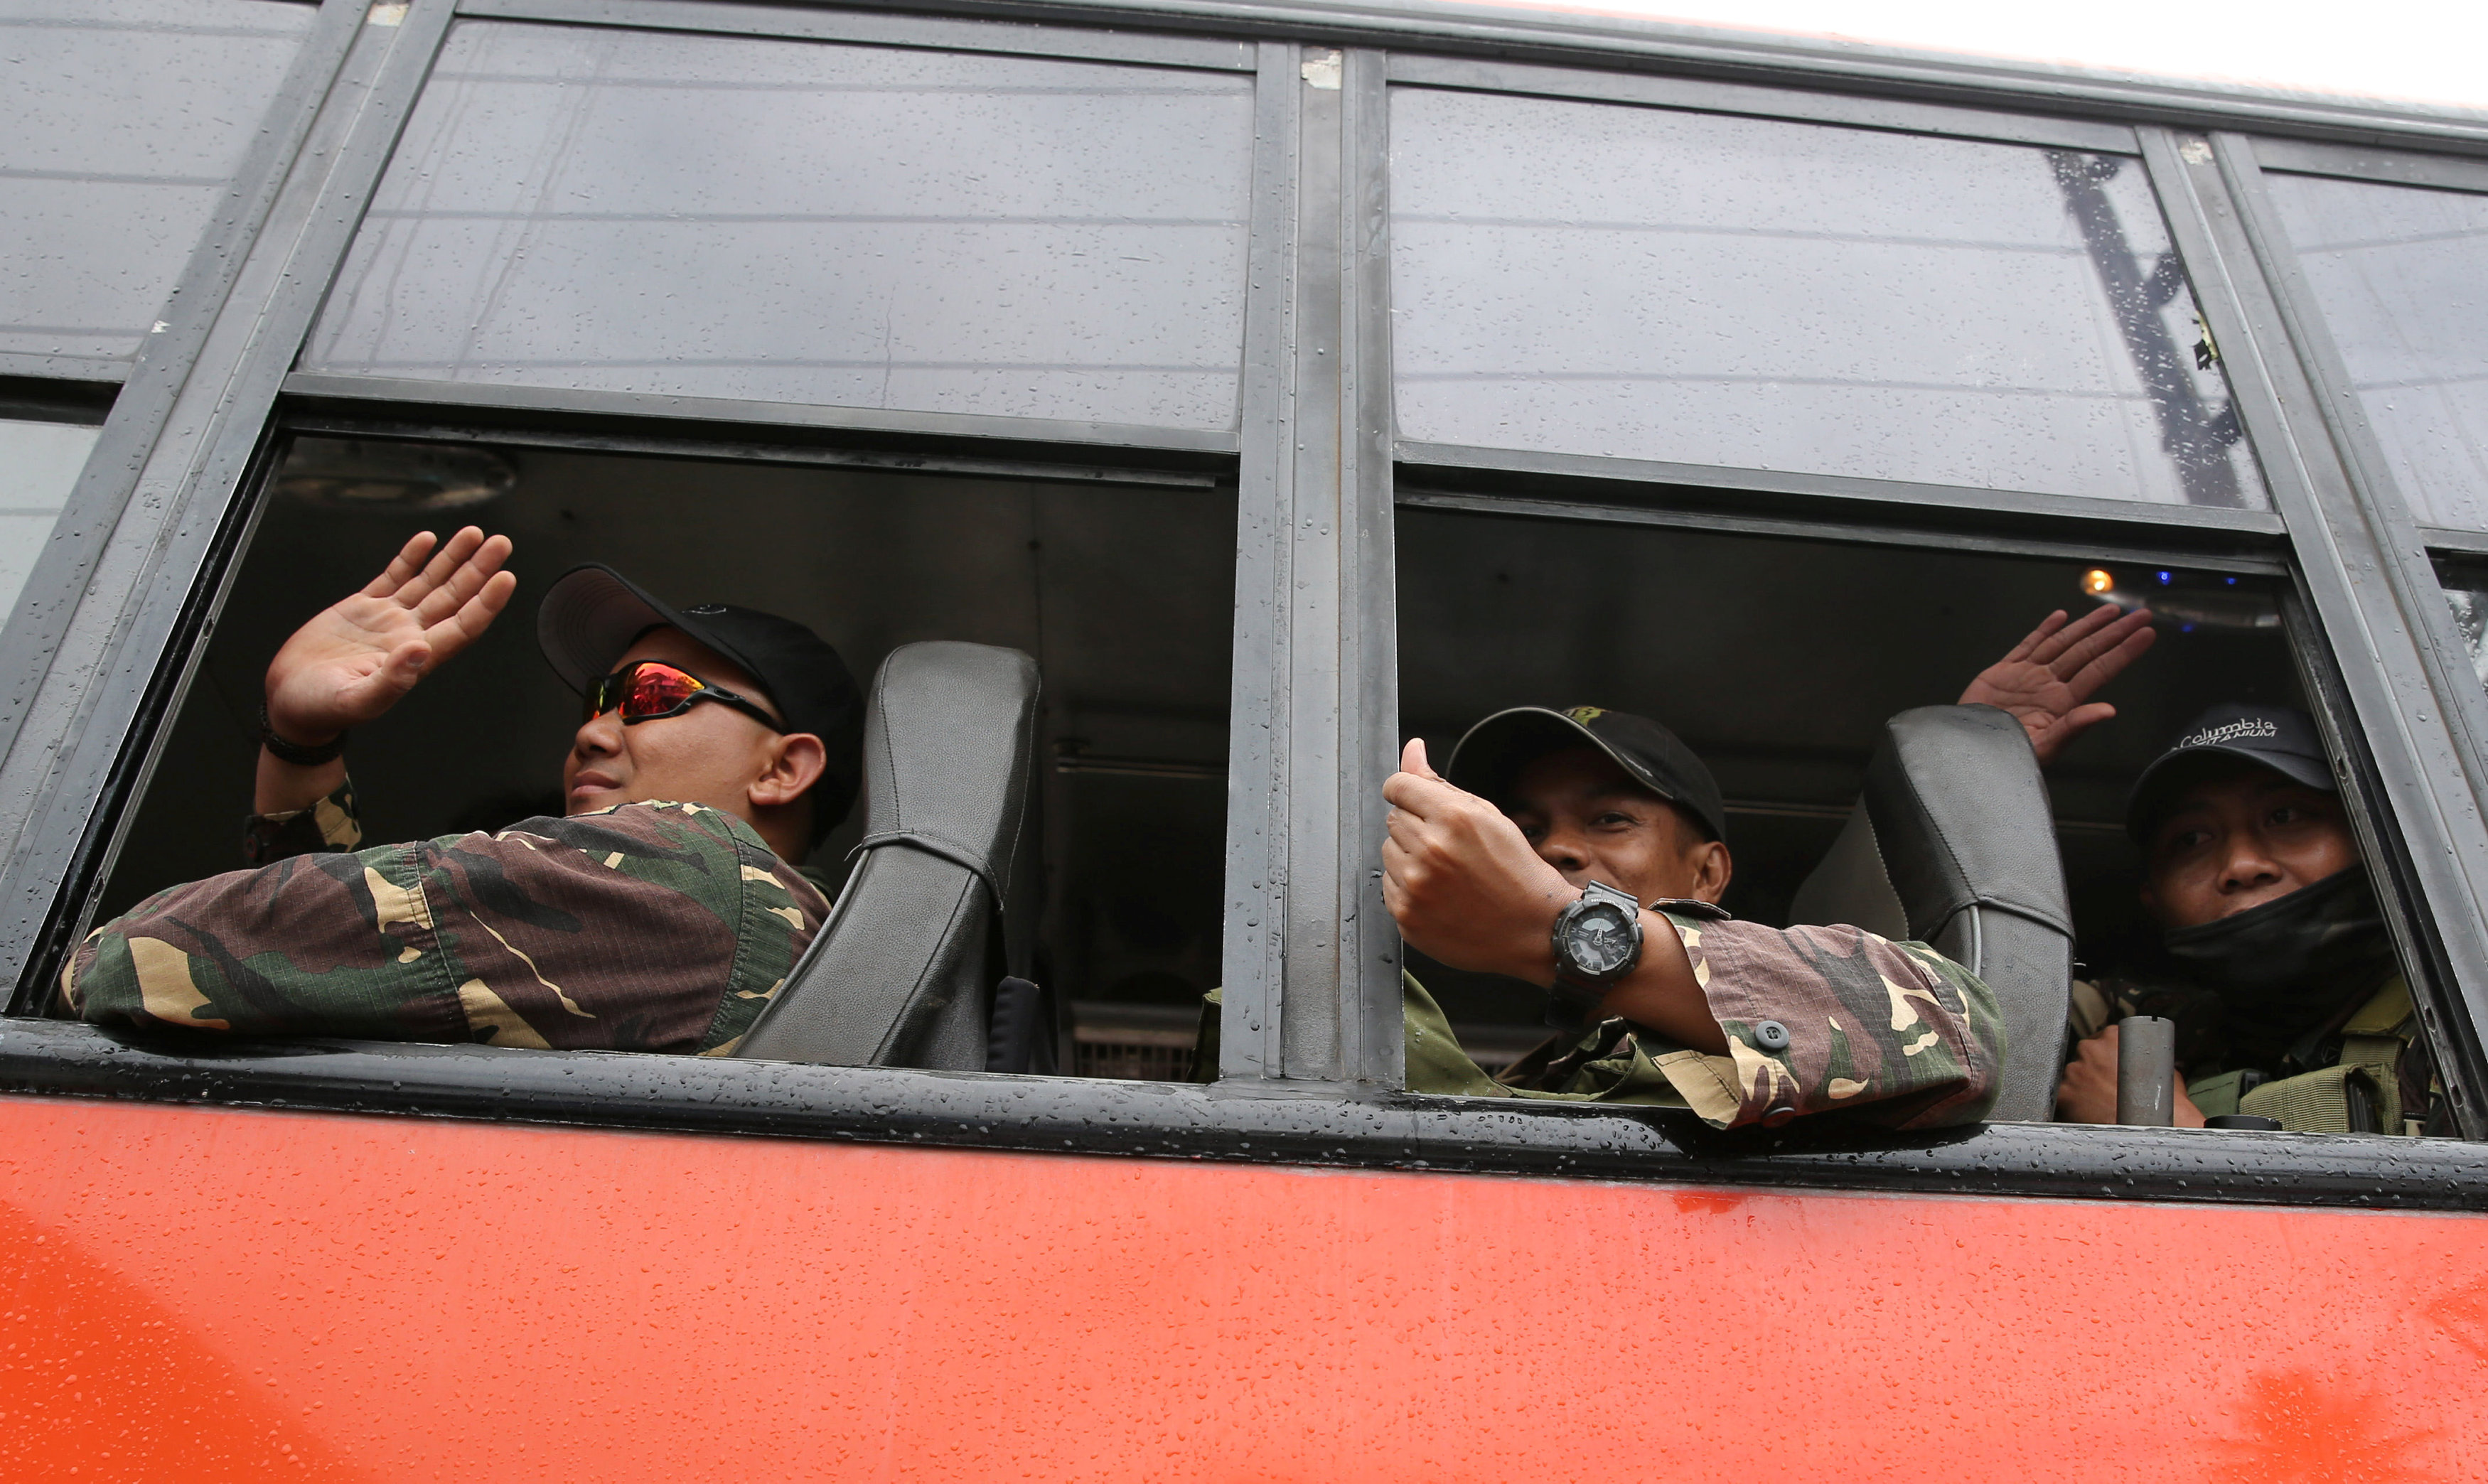 الجنود الفلبينيين يغادرون مراوى عقب تحريرها من داعش